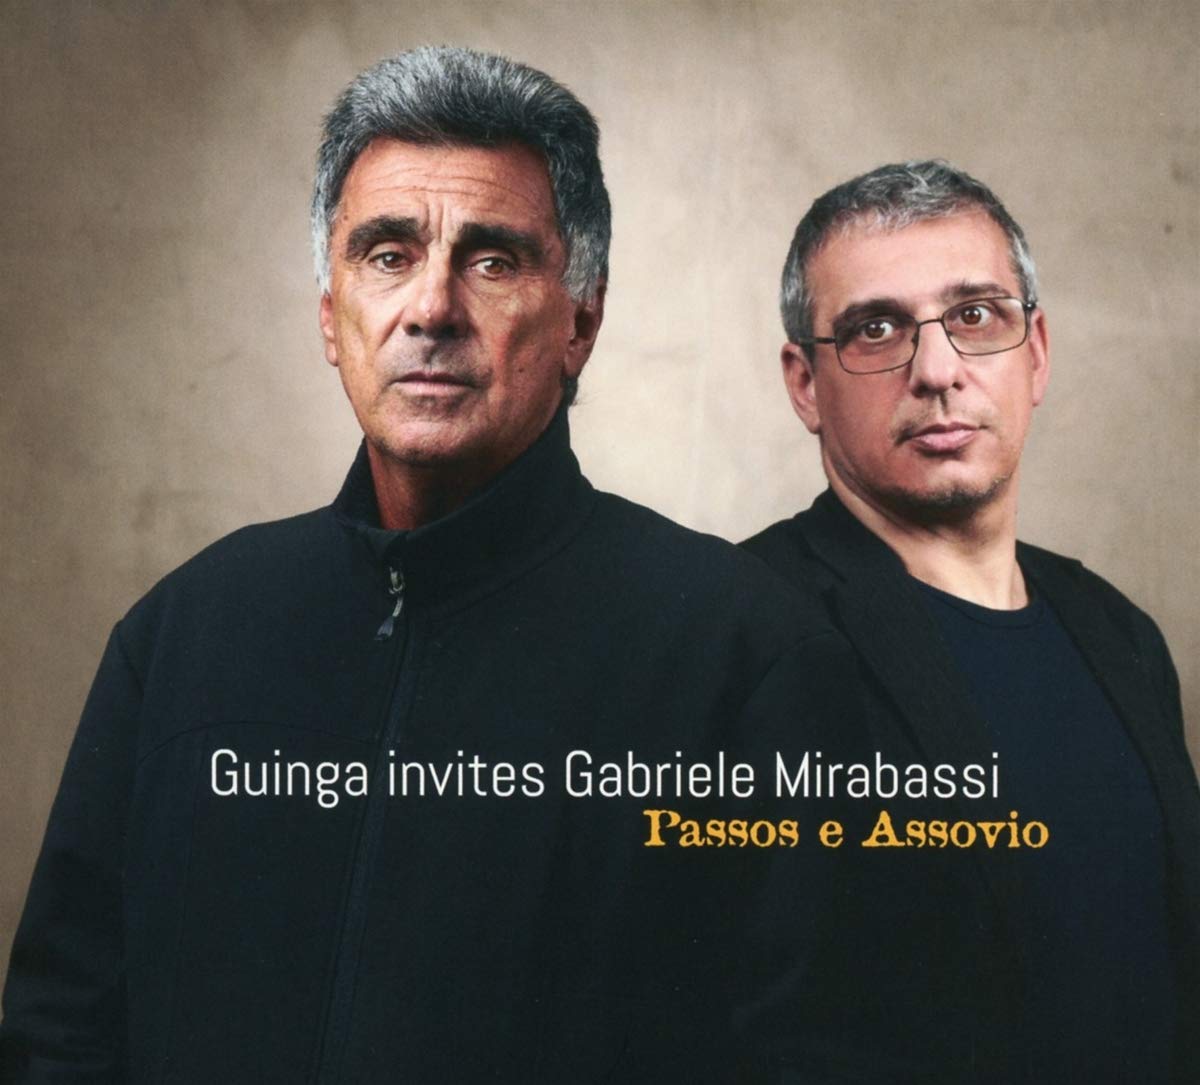 GABRIELE MIRABASSI - Guinga Invites Gabriele Mirabassi - Passos E Assovio cover 